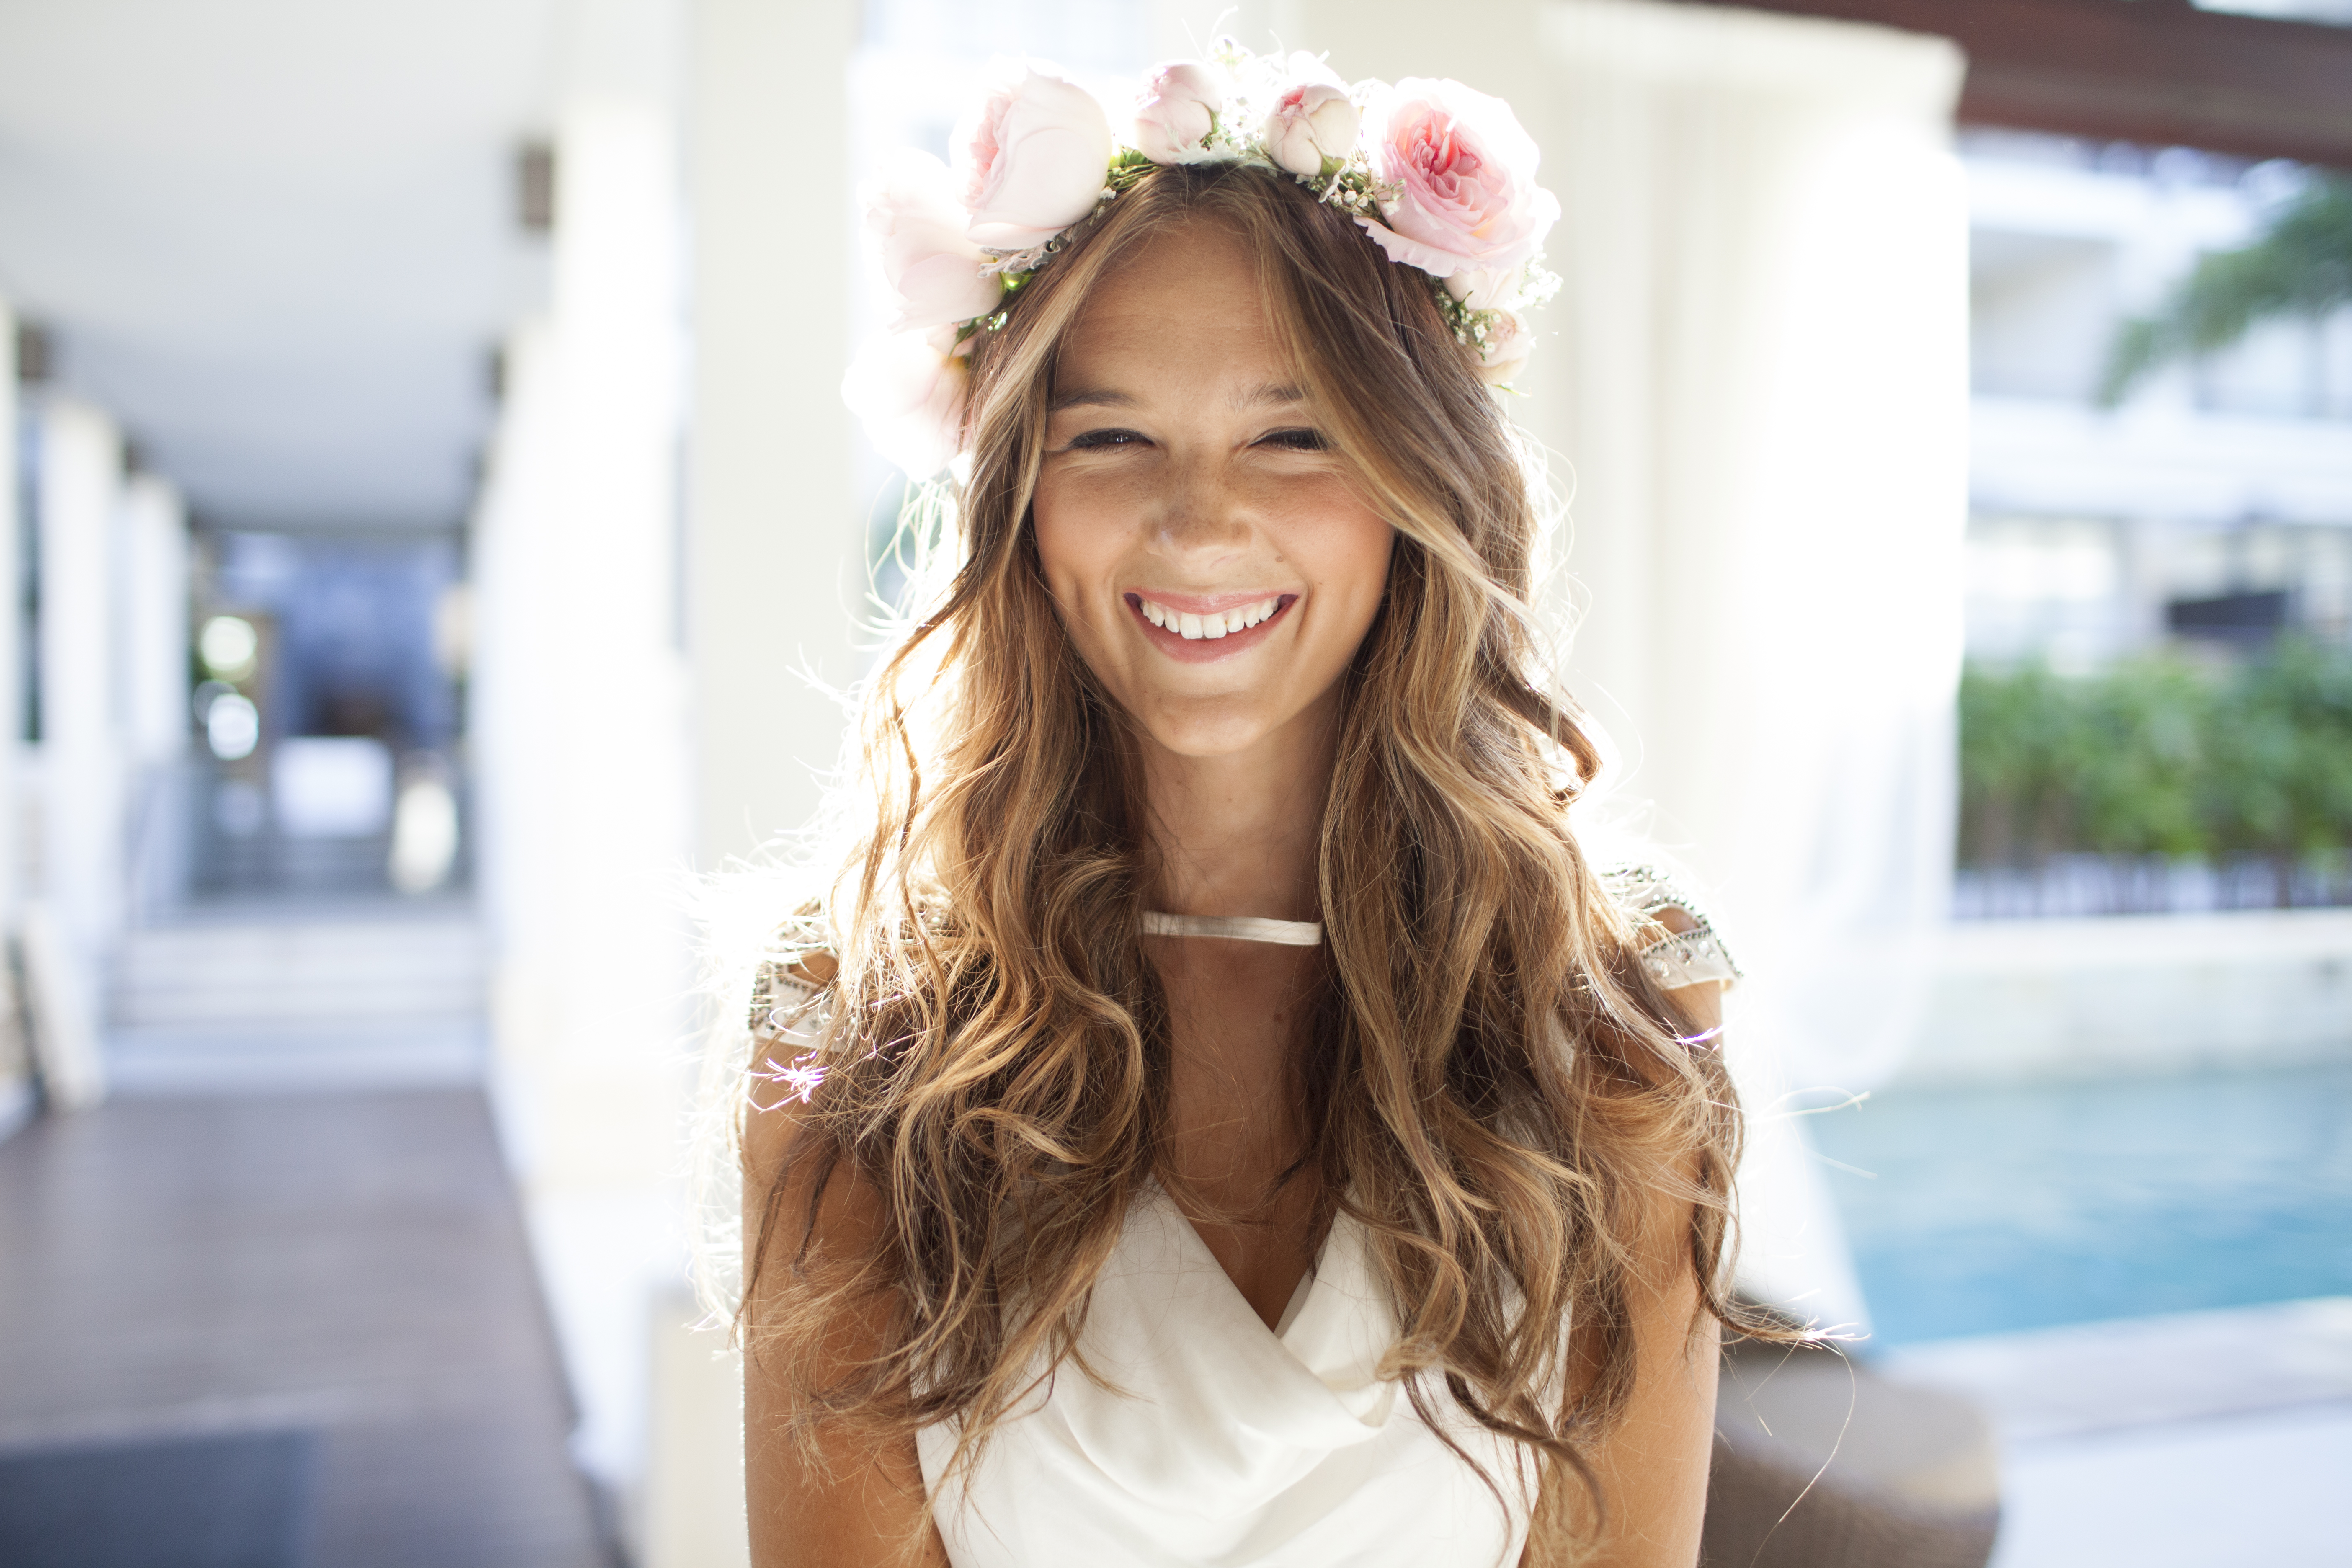 Une belle mariée heureuse qui rit de près | Source : Getty Images